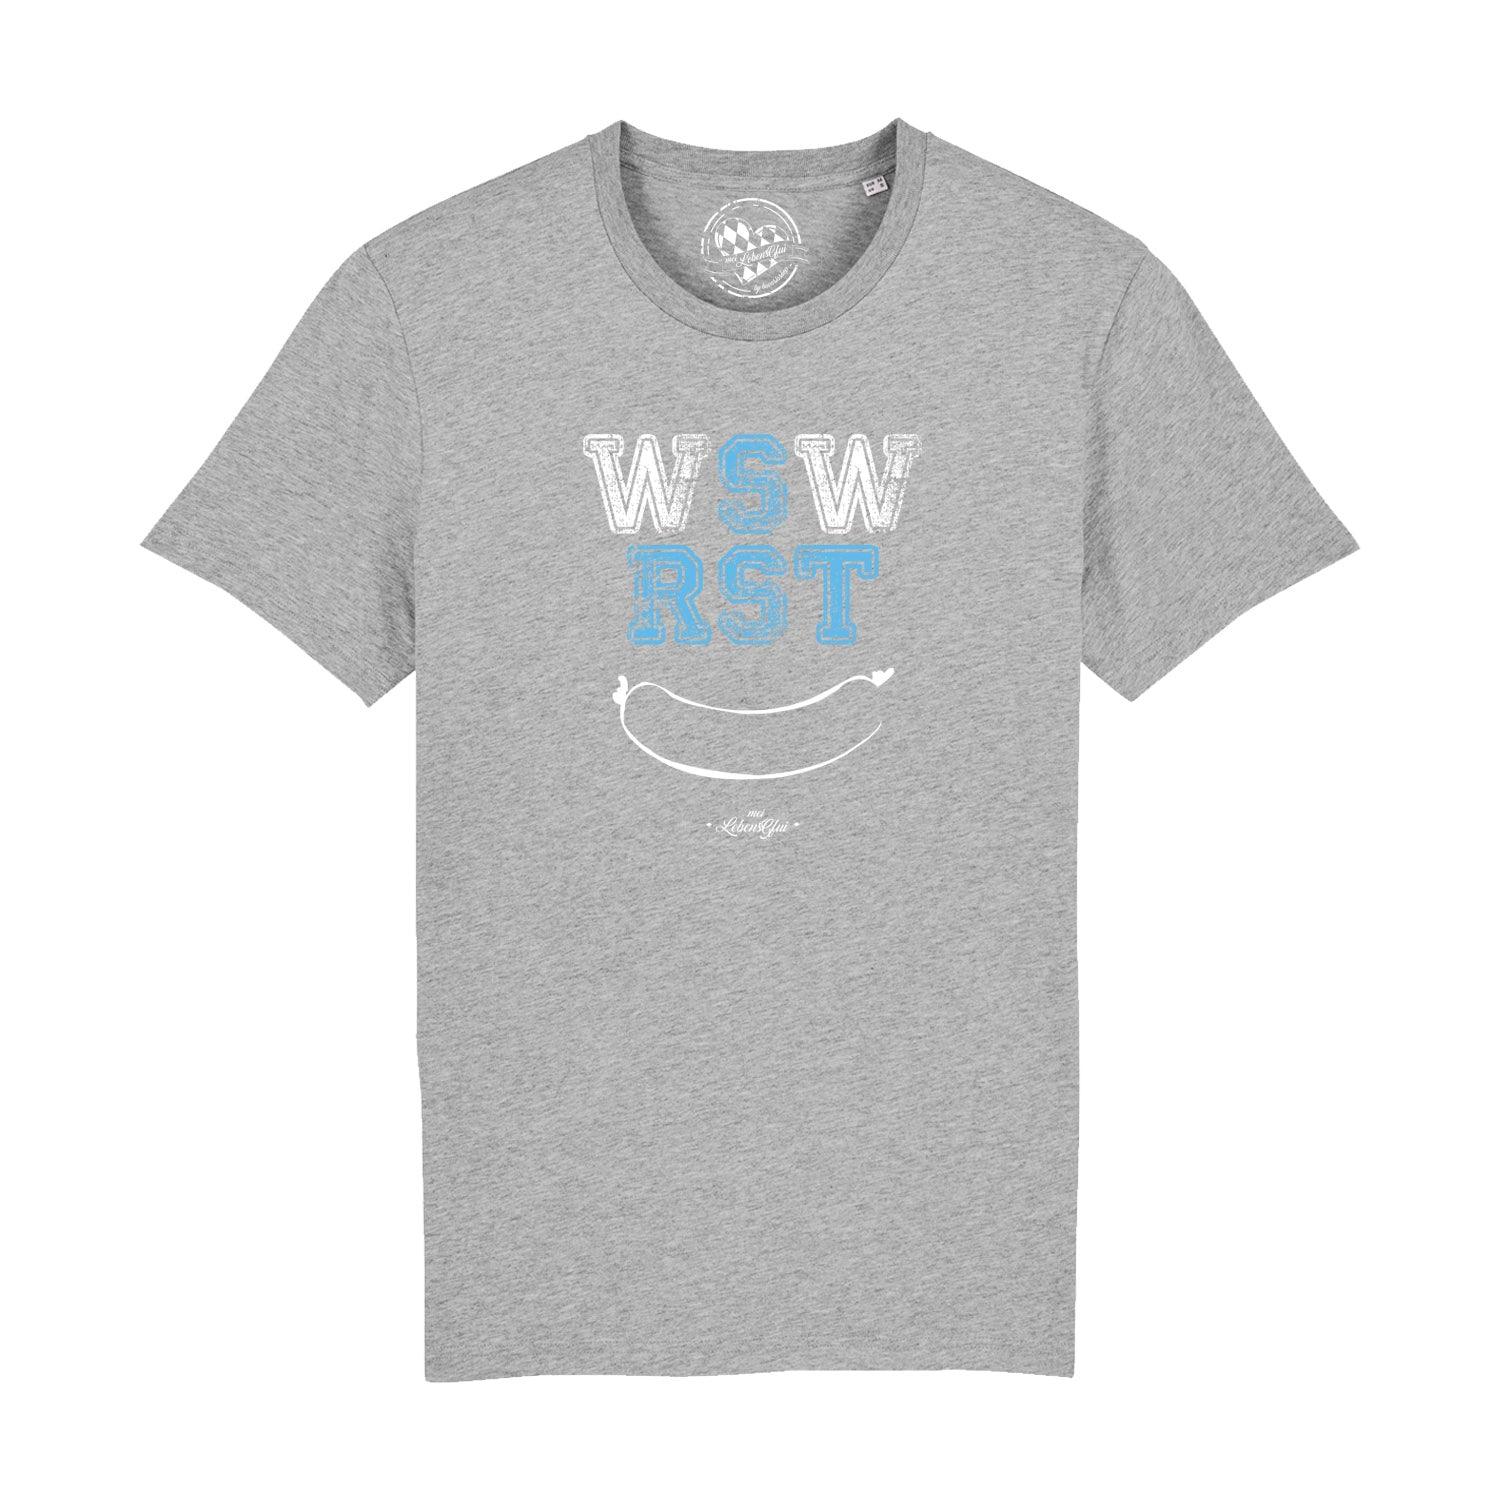 Herren T-Shirt "WSWRST" - bavariashop - mei LebensGfui